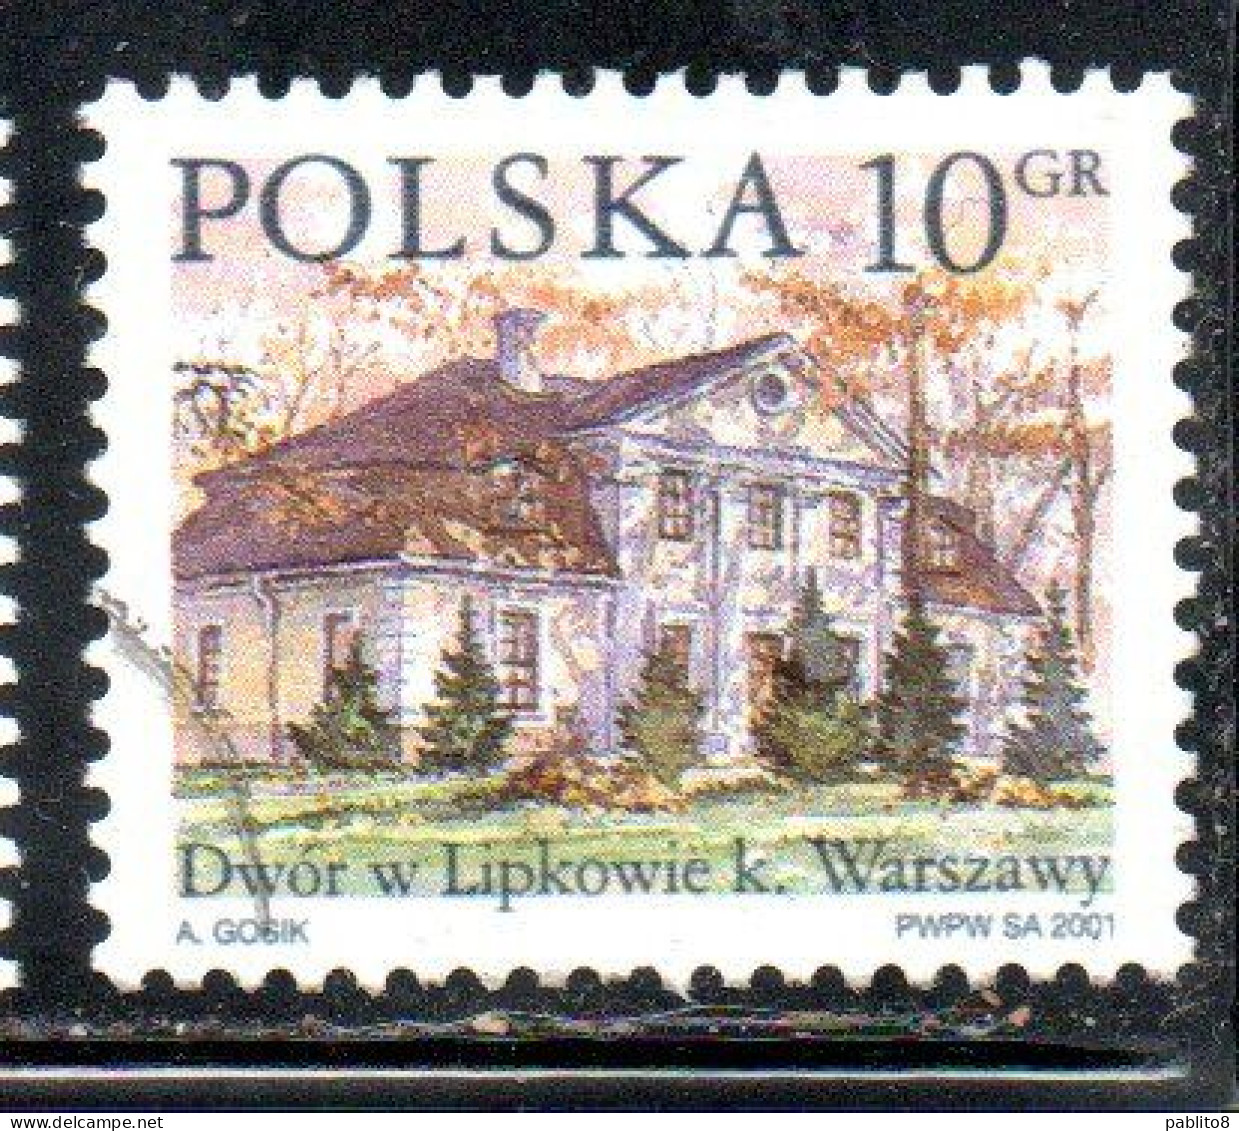 POLONIA POLAND POLSKA 2001 COUNTRY ESTATES LIPKOW 10g USED USATO OBLITERE' - Usati